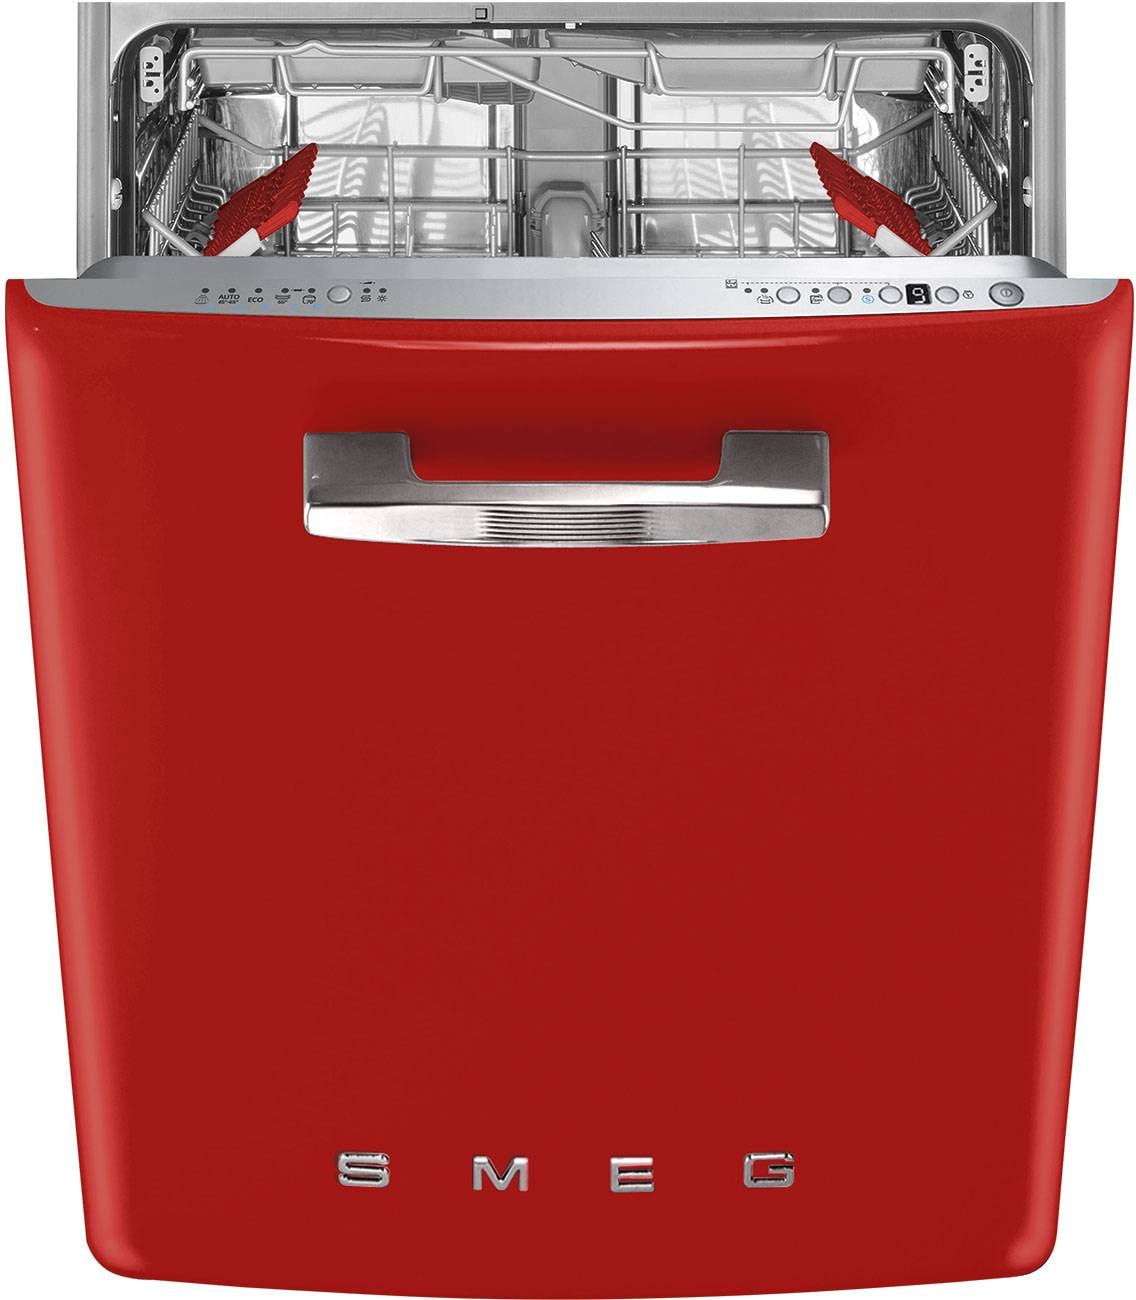 STFABWH3 SMEG Lave vaisselle encastrable 60 cm pas cher ✔️ Garantie 5 ans  OFFERTE